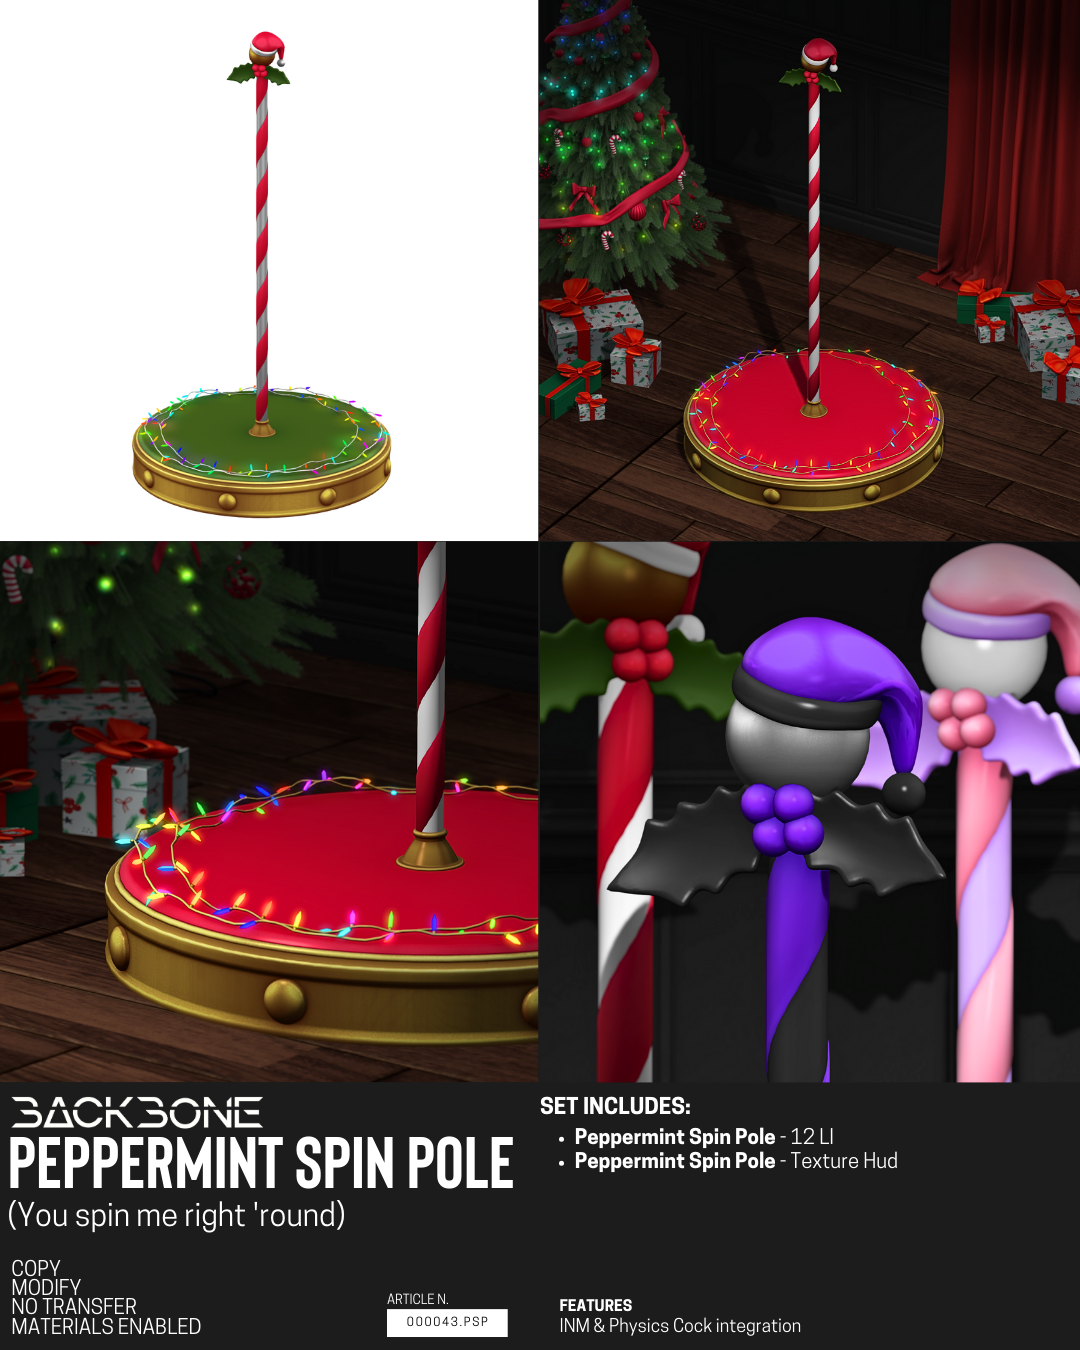 BackBone – Peppermint Spin Pole